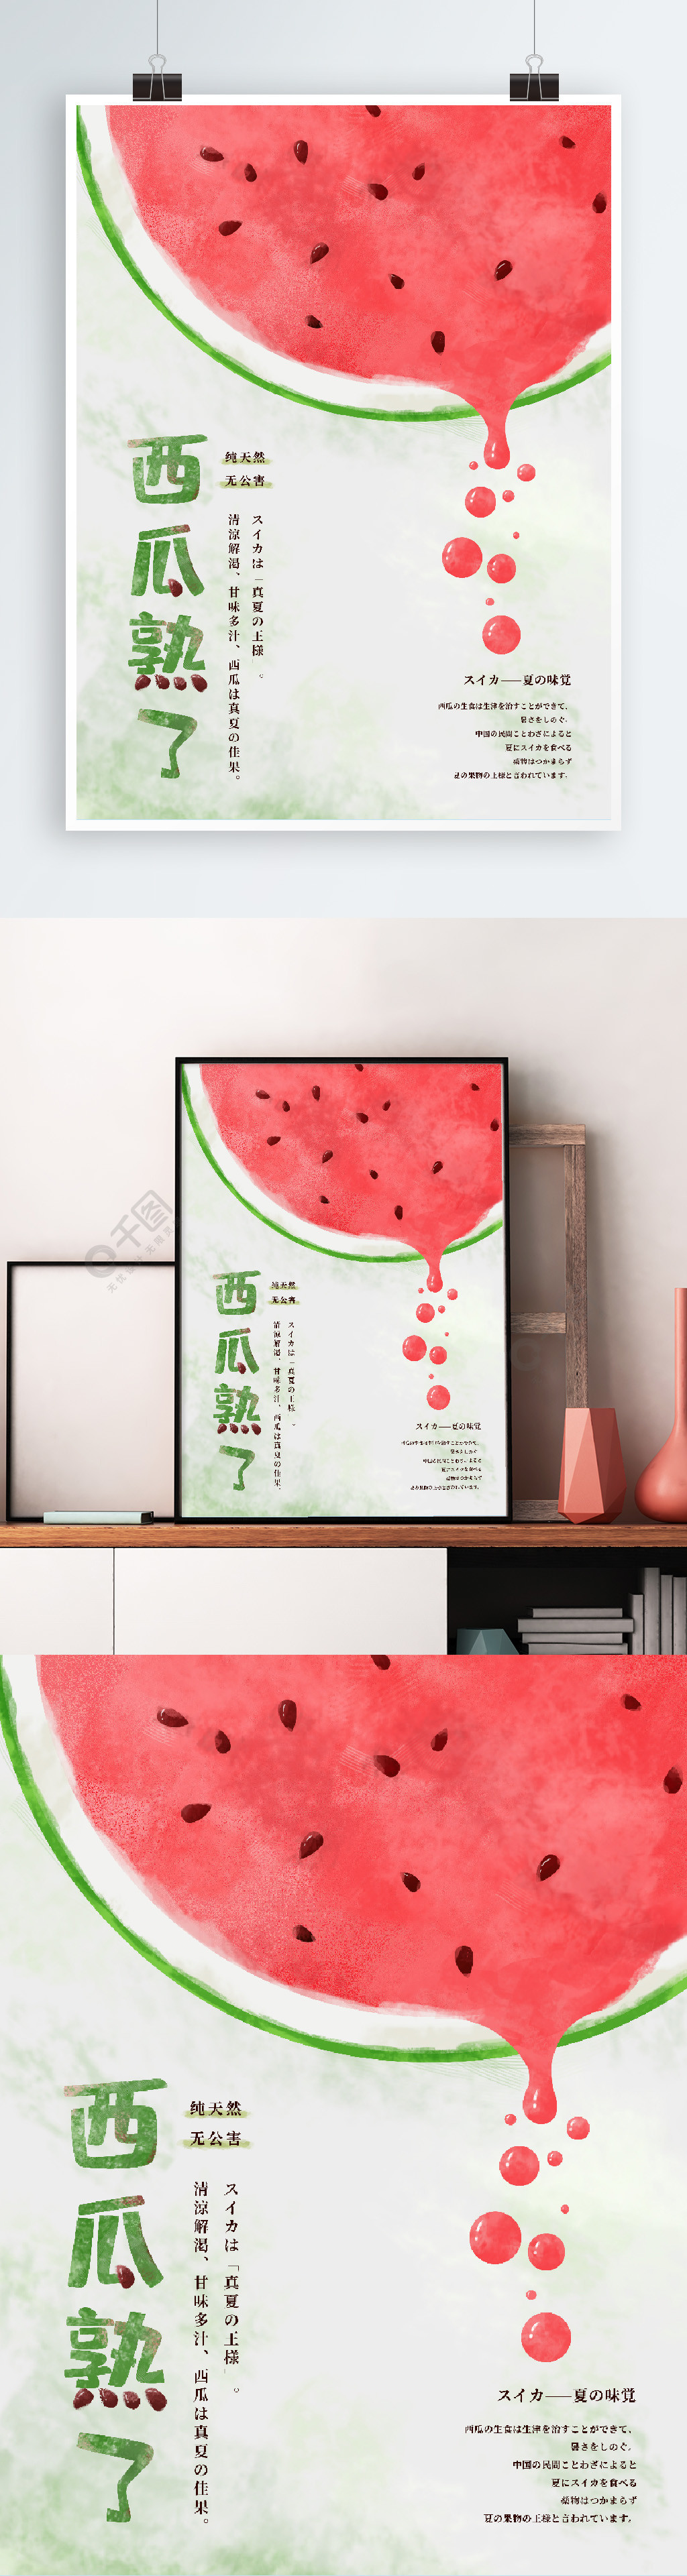 原创清新简约手绘风创意西瓜熟了水果海报1年前发布